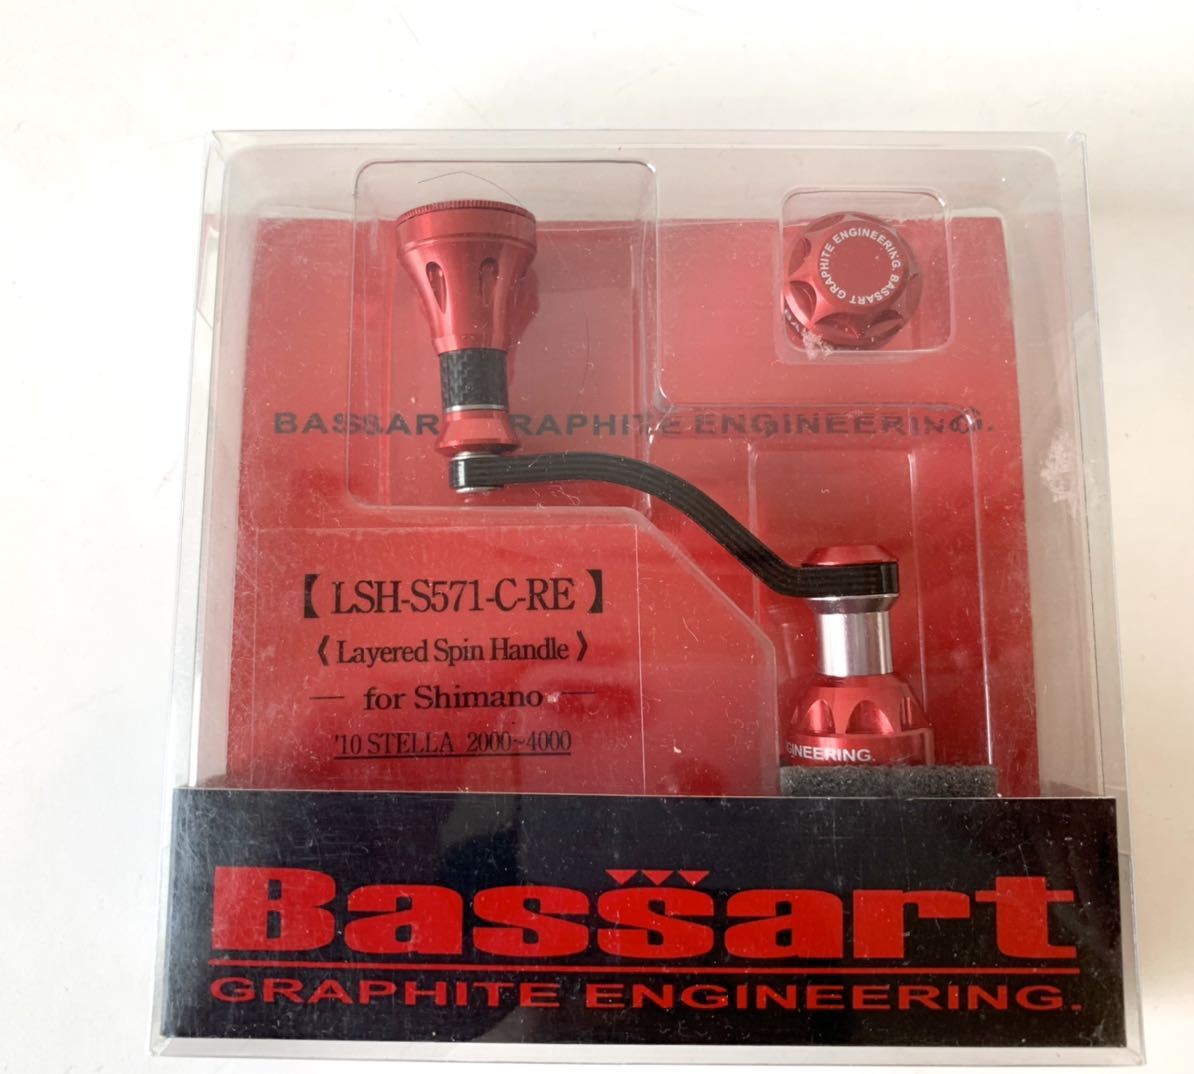 ★未使用 BASSART カーボン レイヤード ハンドル LSH-S521-C-RE バサート Gクラフト